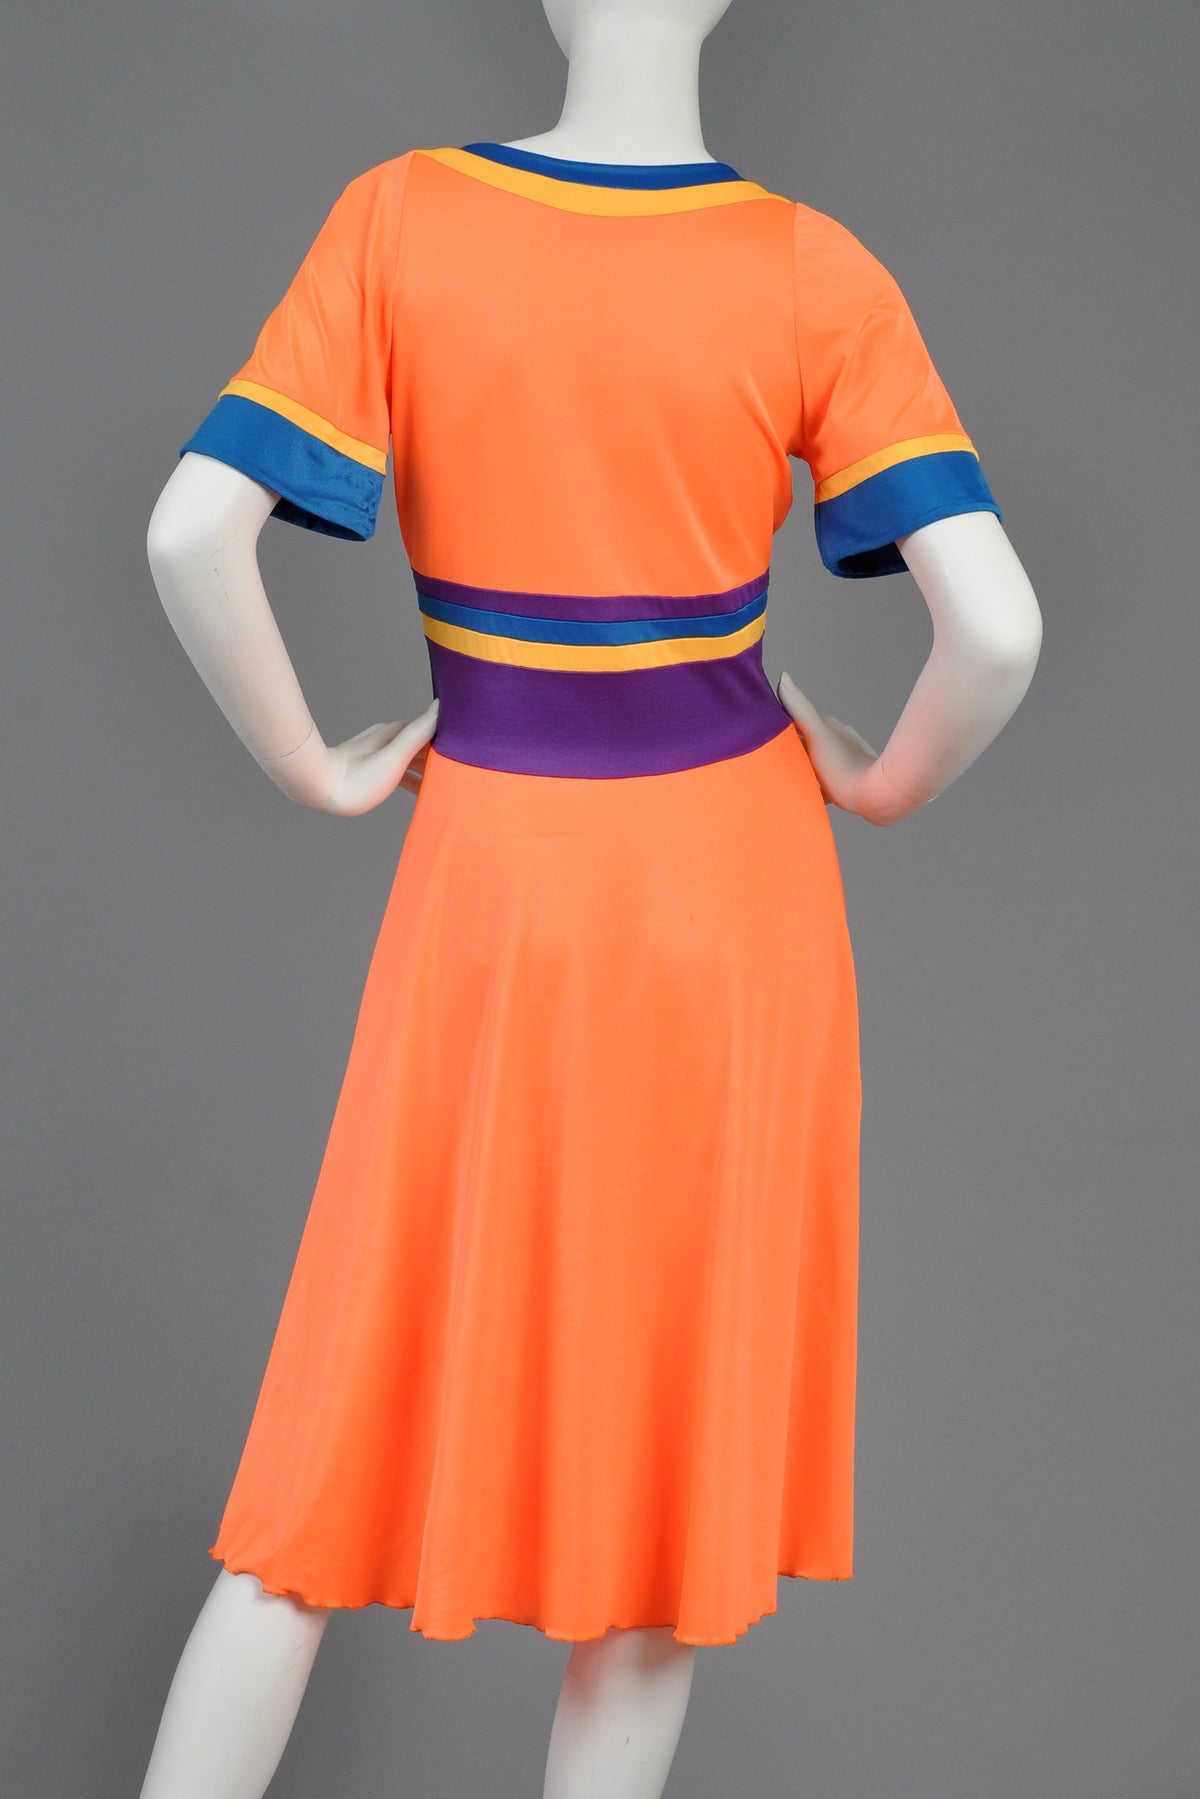 Giorgio di Sant'Angelo Colorblocked 1970s Dress 3